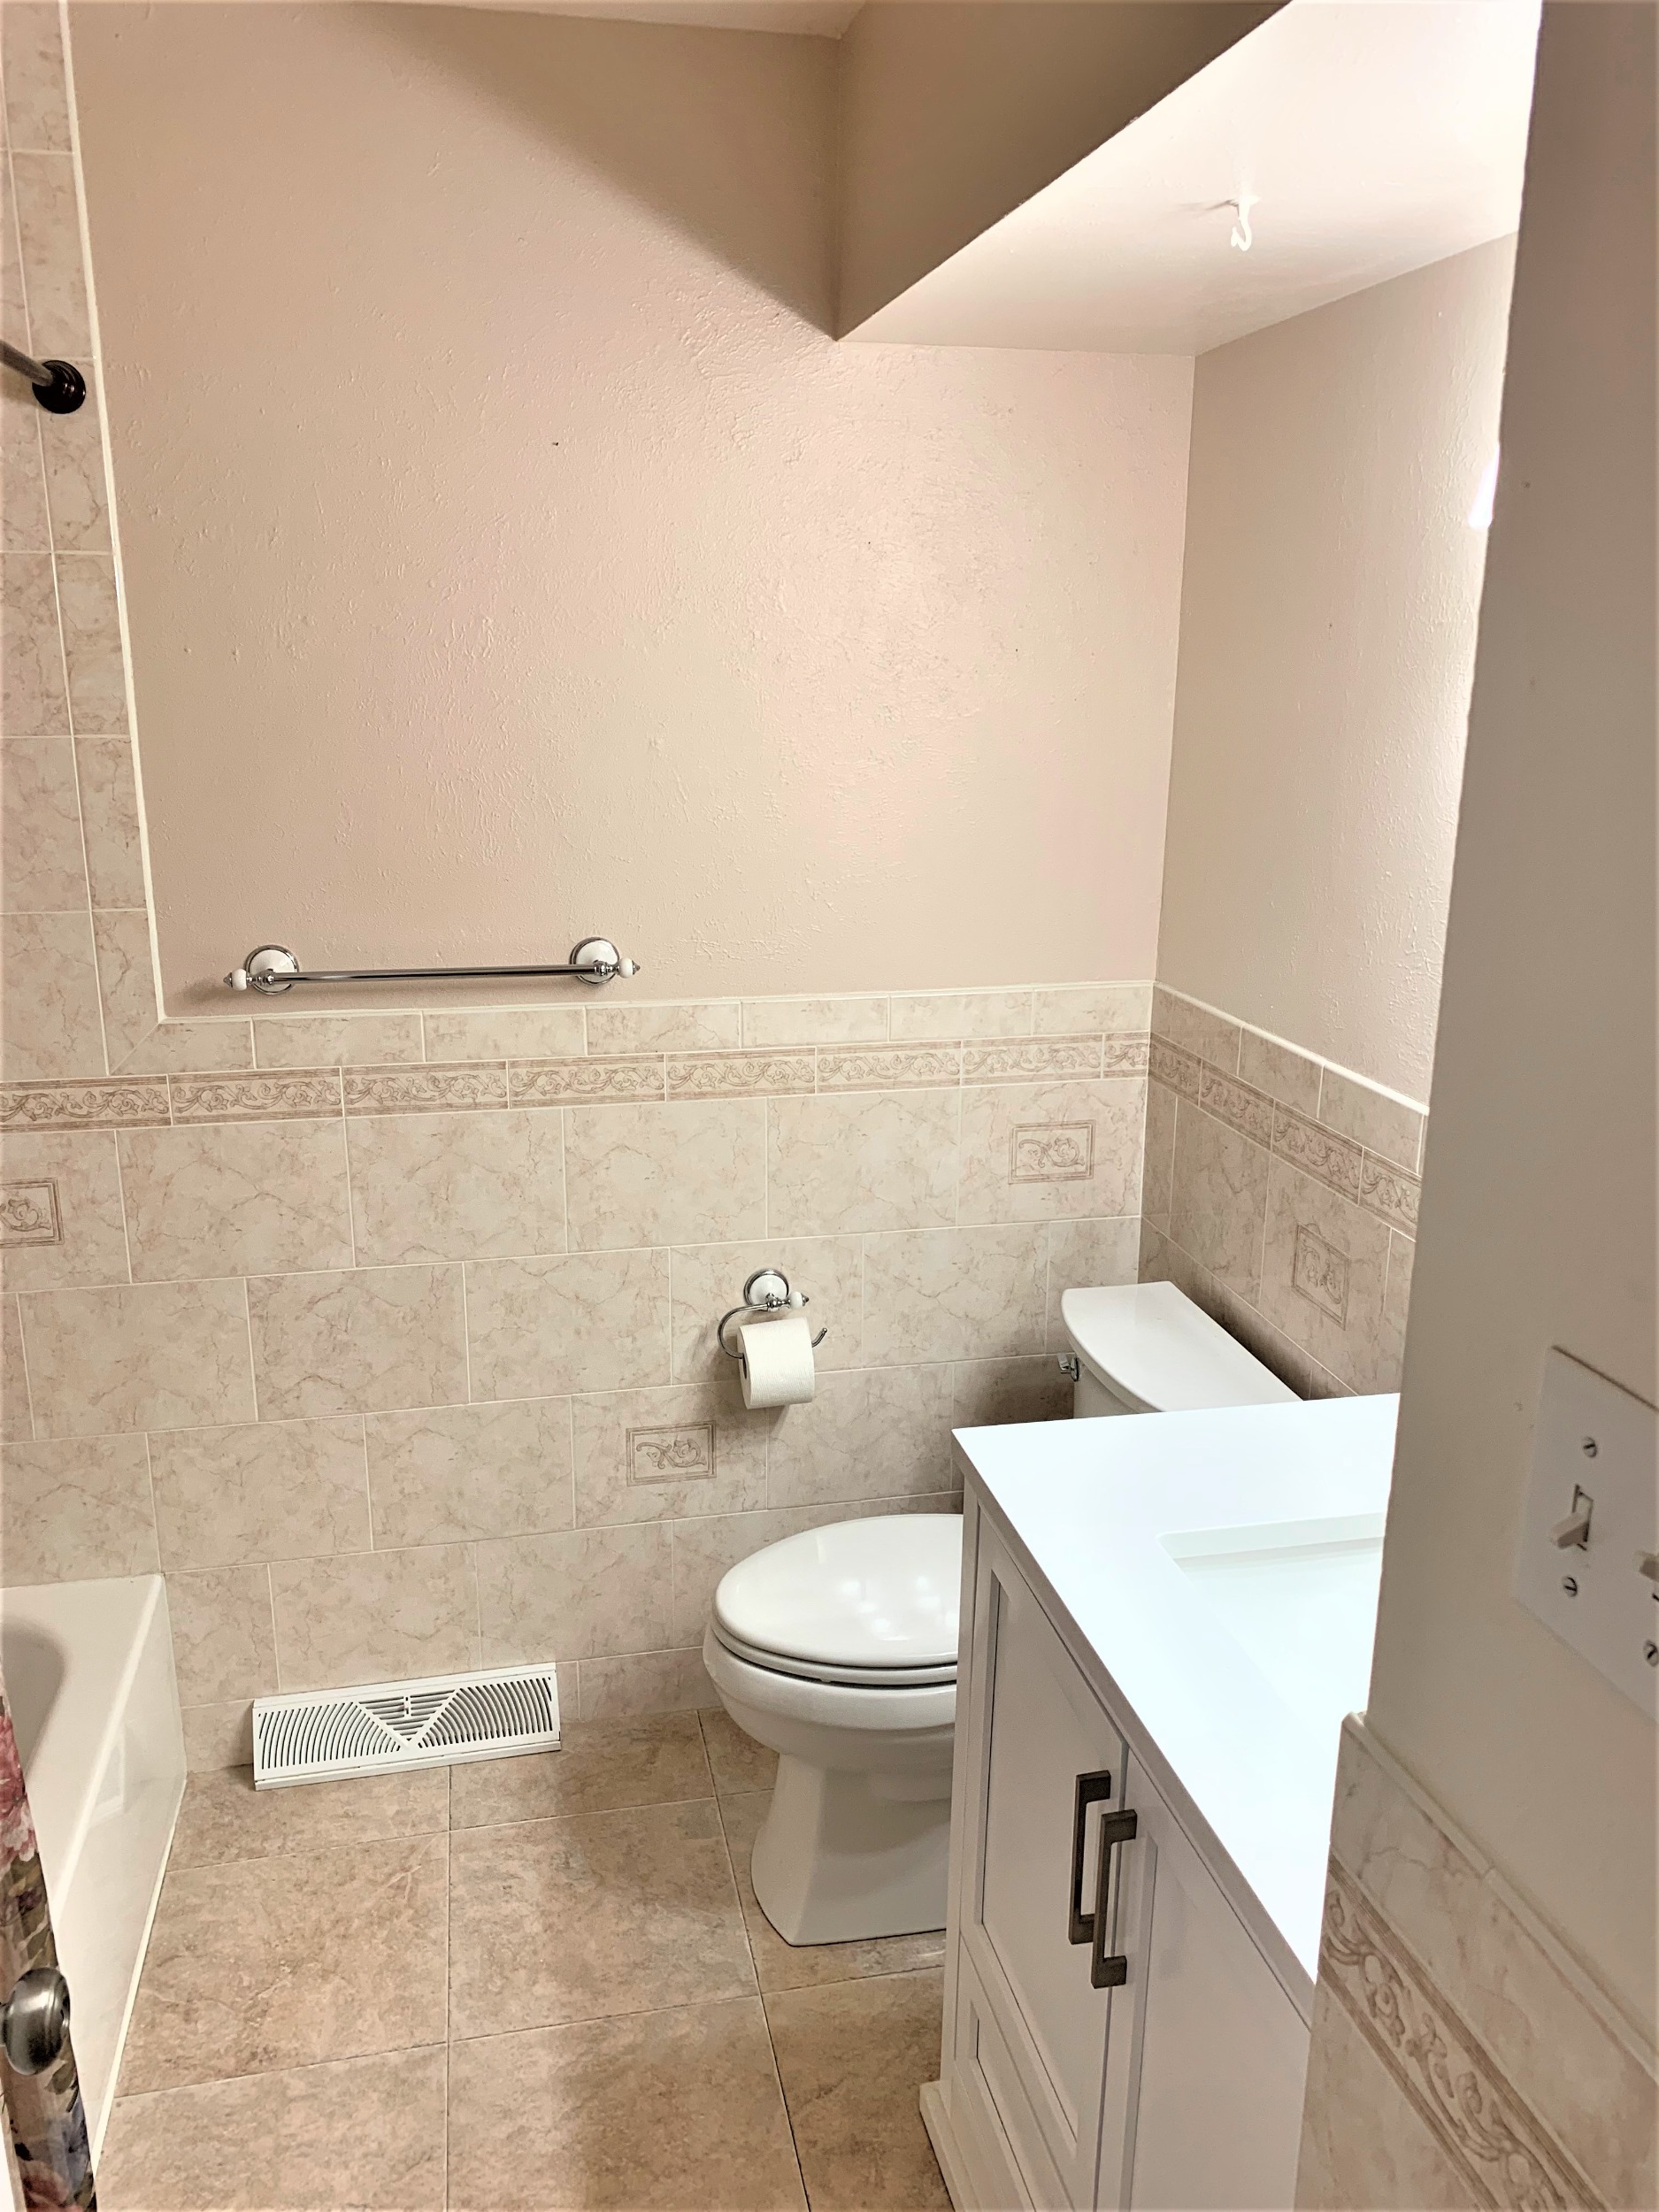 Updated Full Hall Bathroom